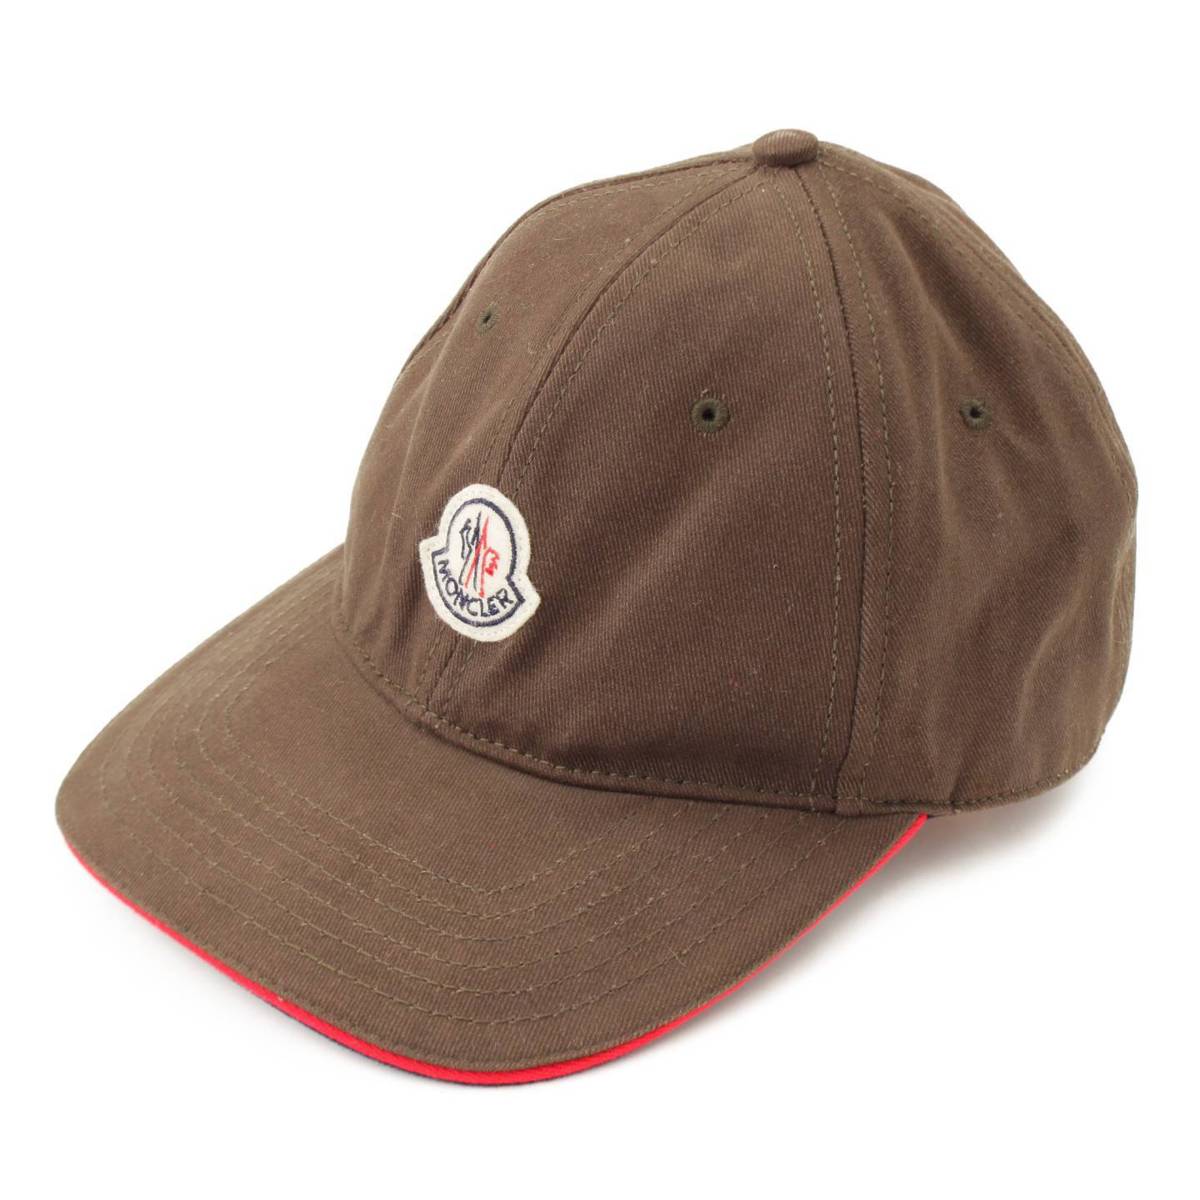 モンクレール(Moncler) BERRETTO BASEBALL キャップ 帽子 00212 カーキ